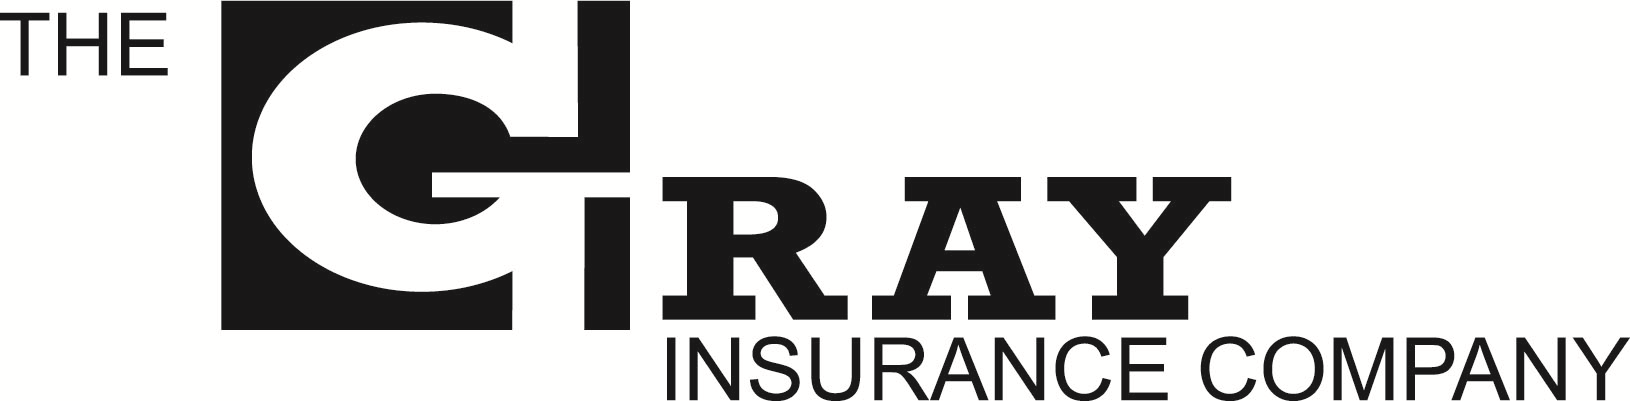 The Gray Insurance Company logo